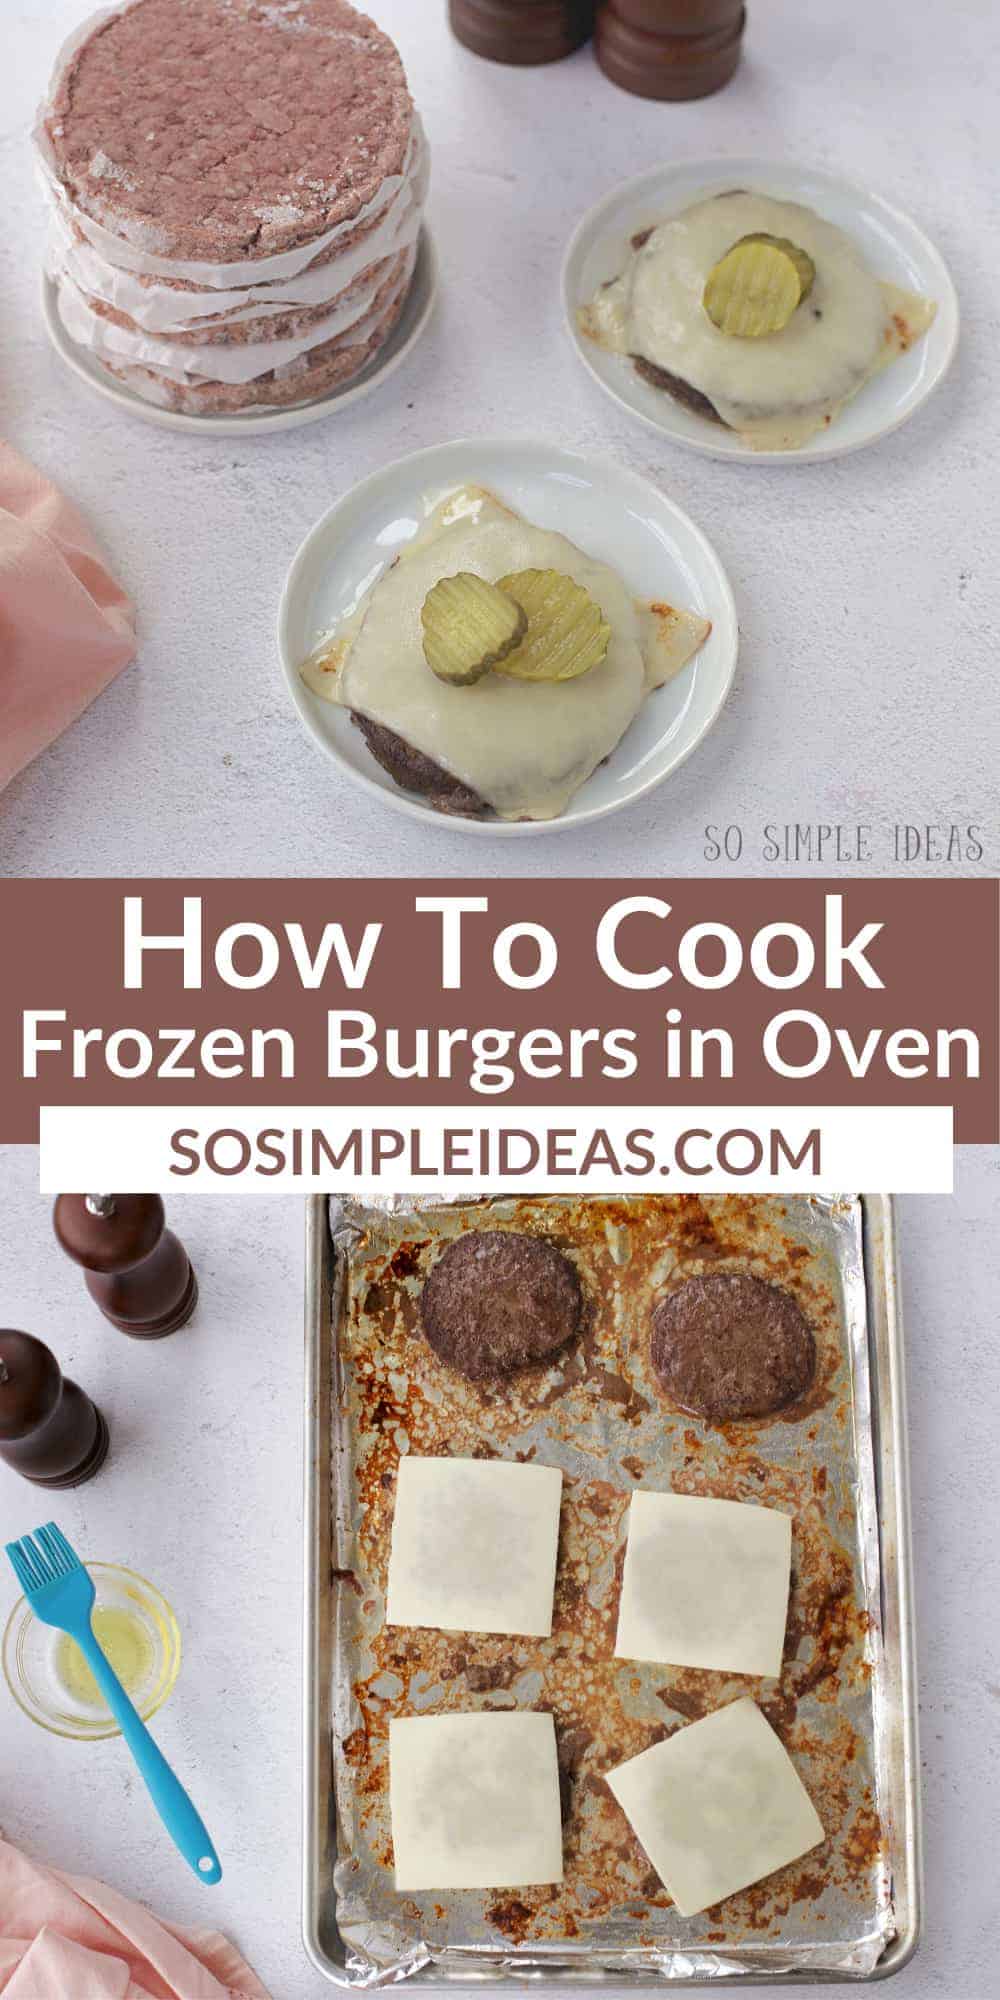 cooking frozen burgers in oven pinterest image.